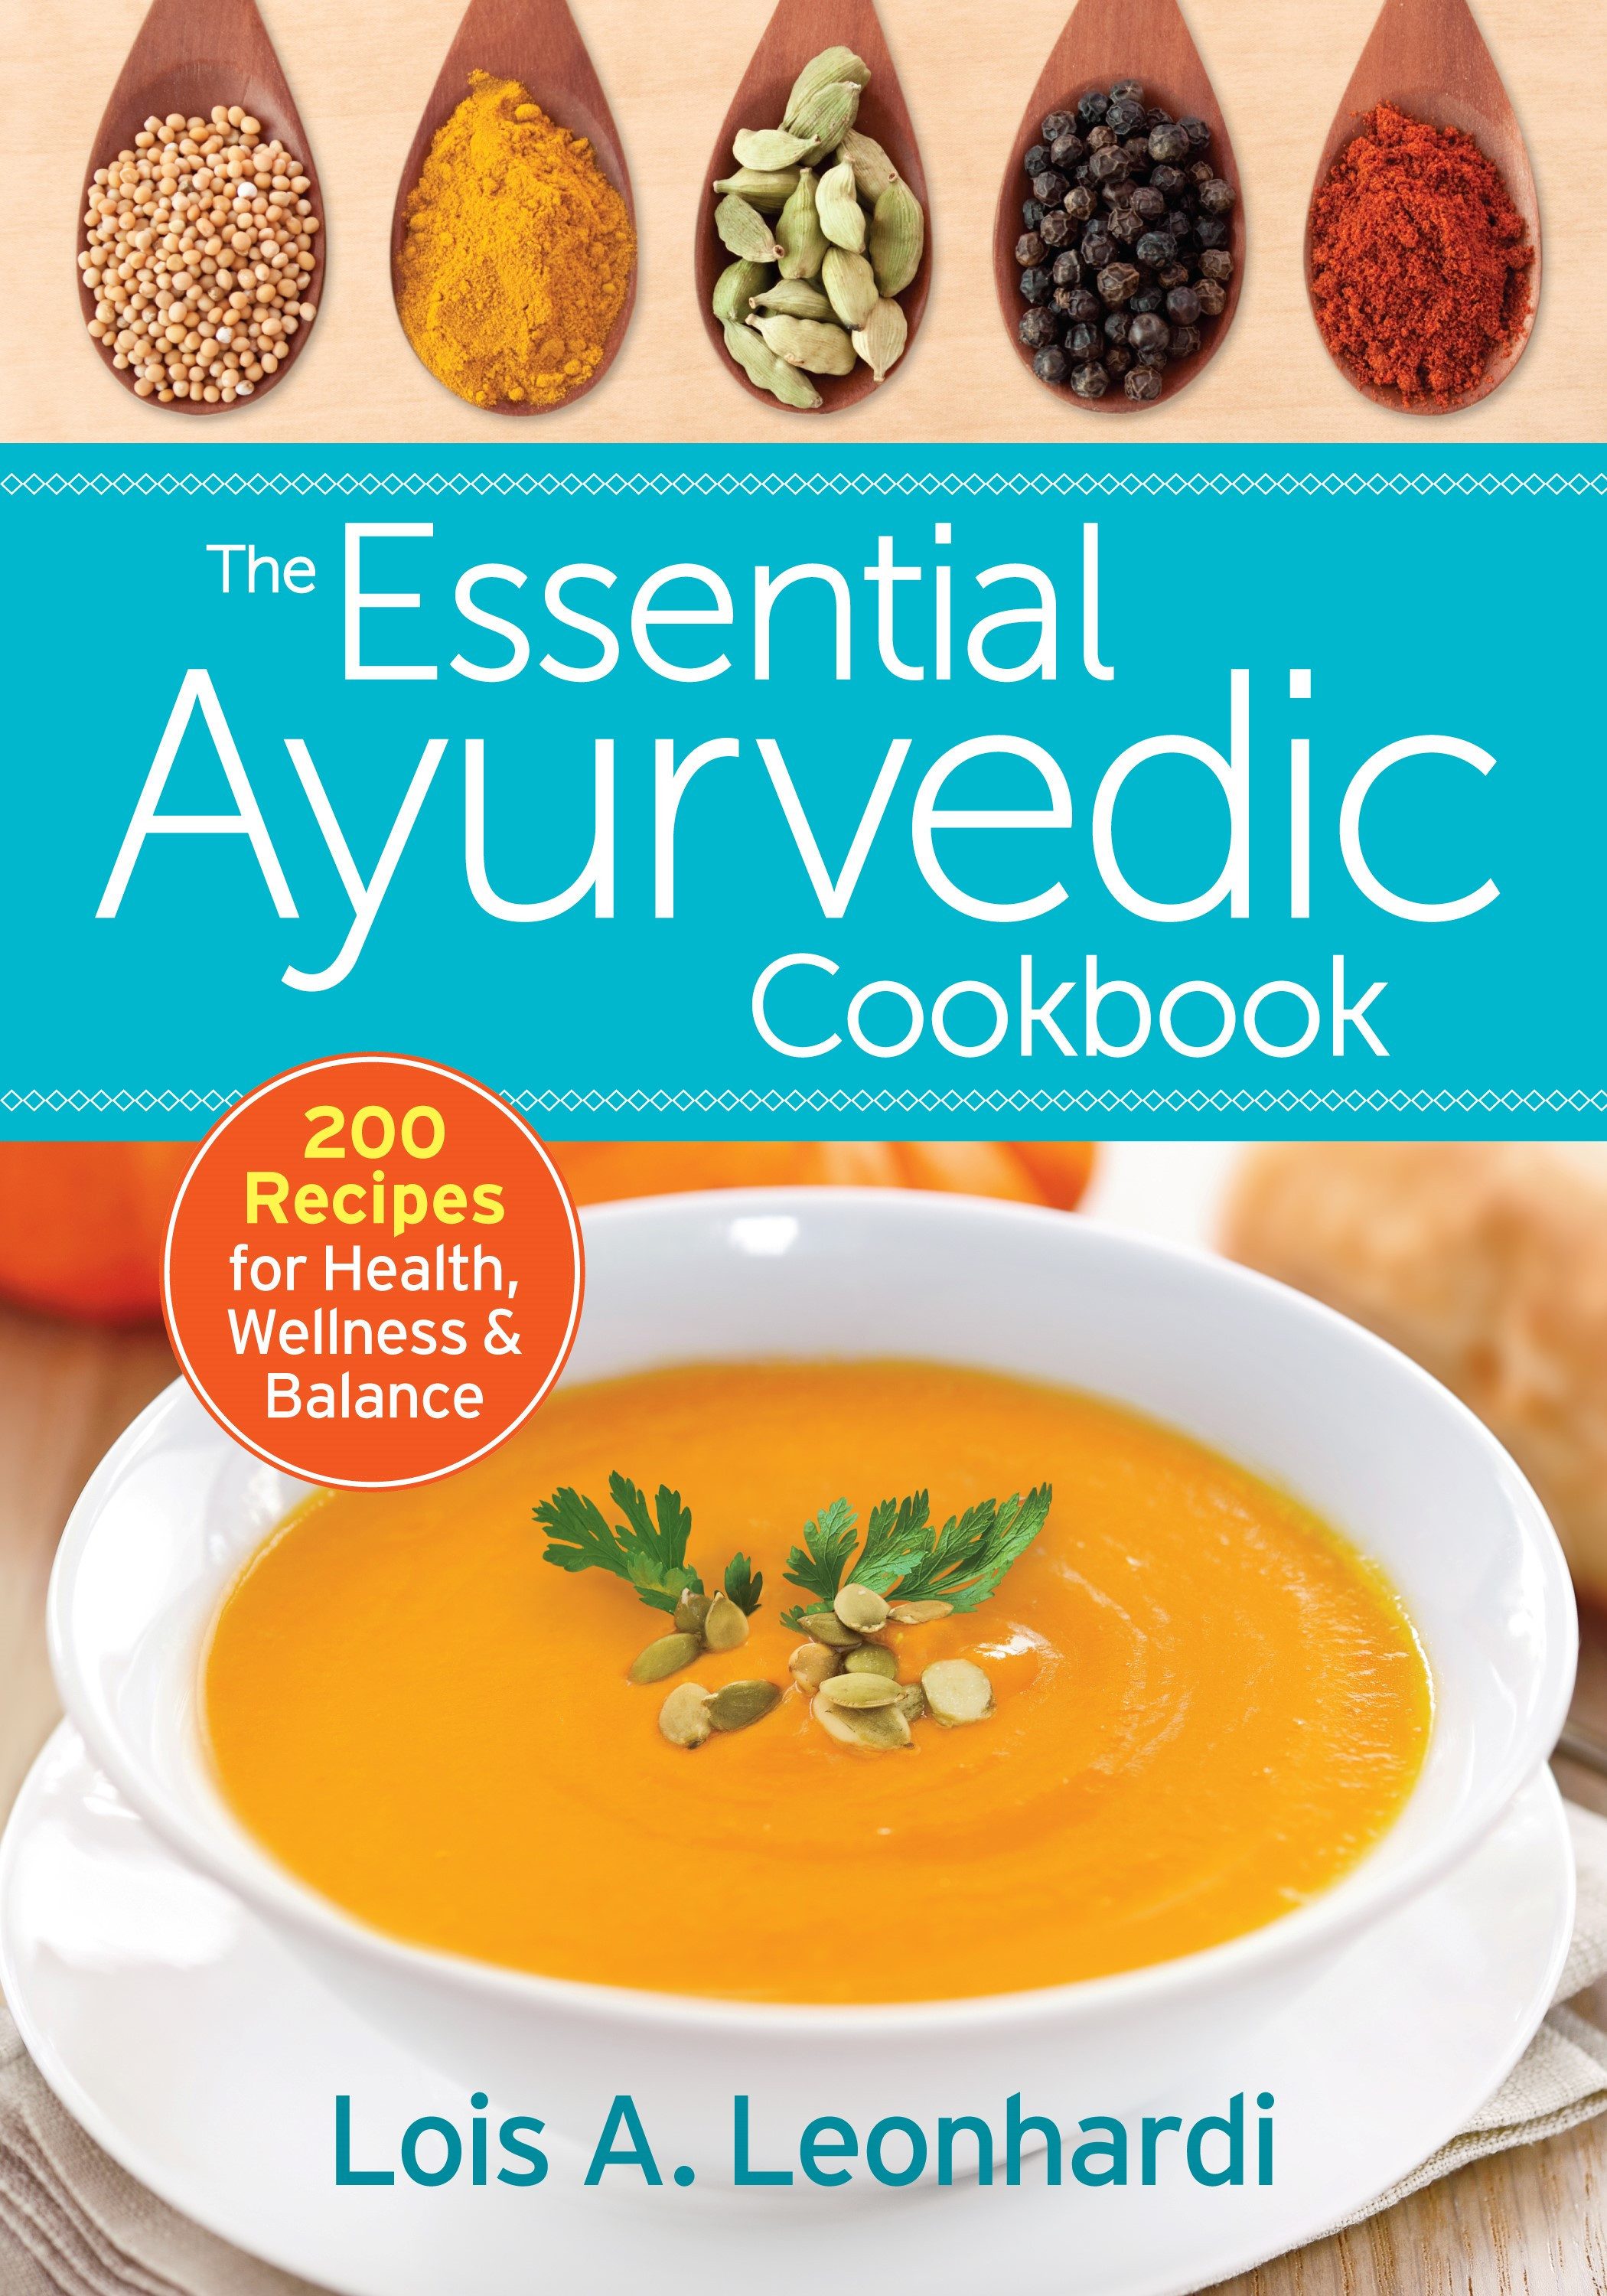 The Essential Ayurvedic Cookbook